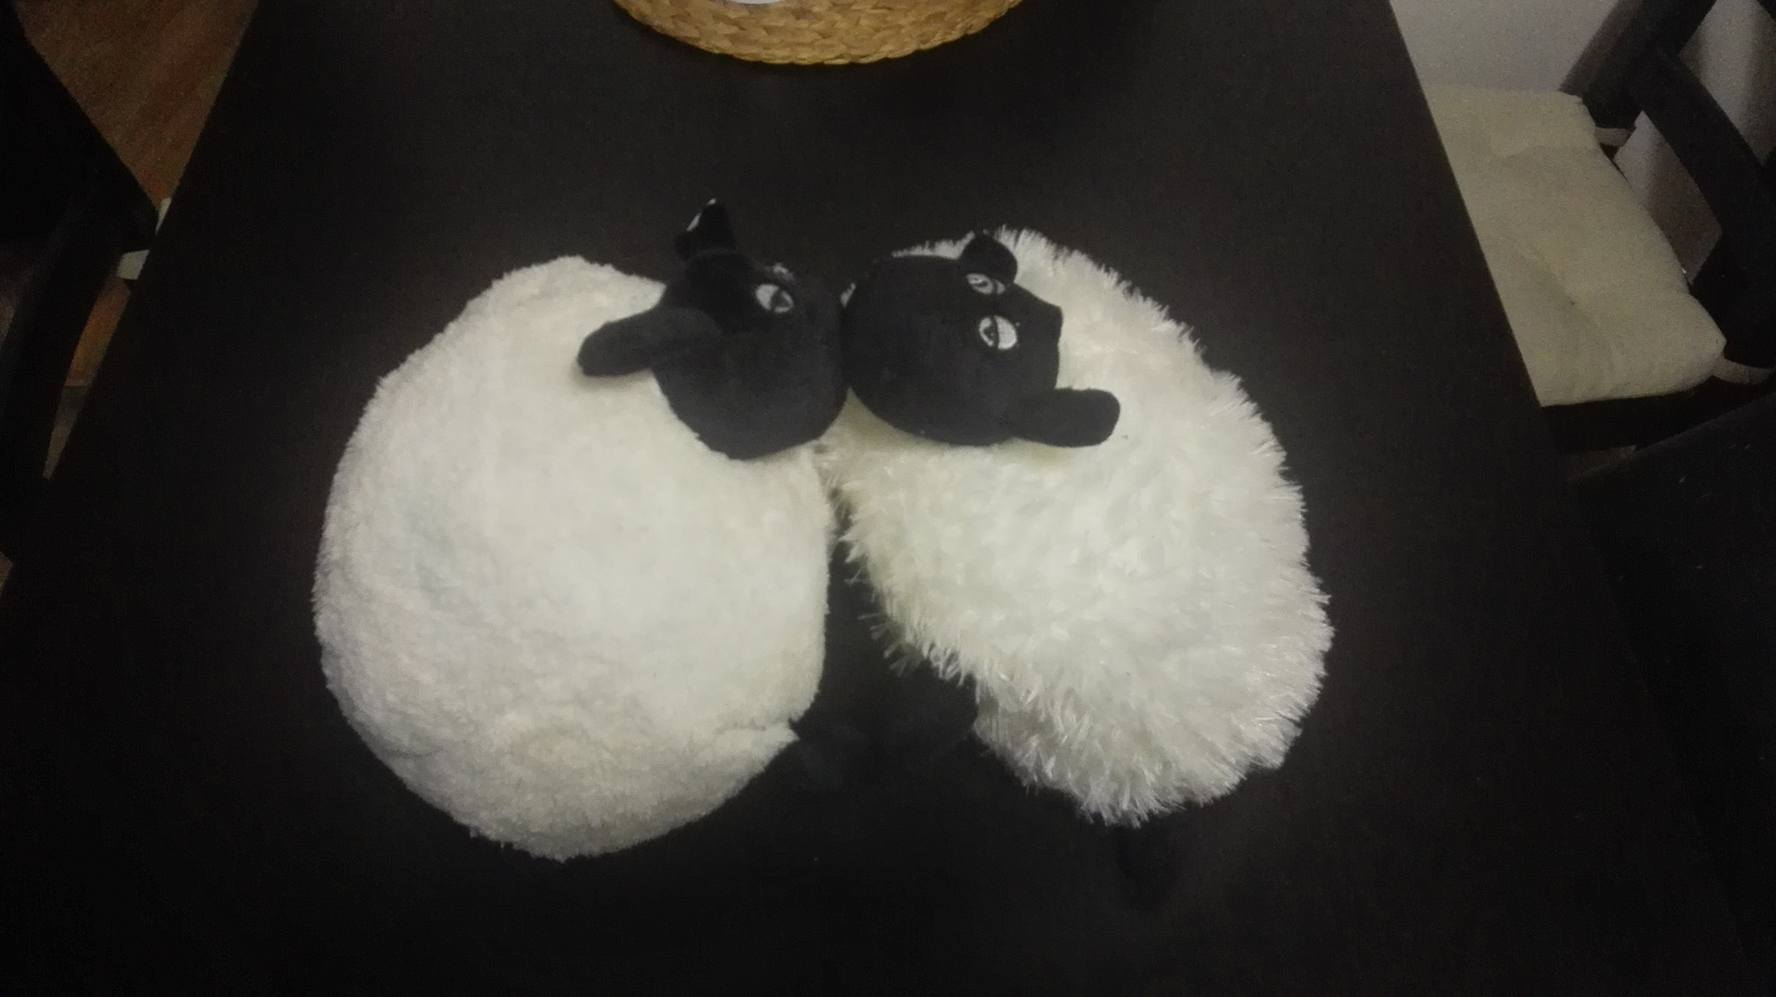 Polštářek v podobě ovečky